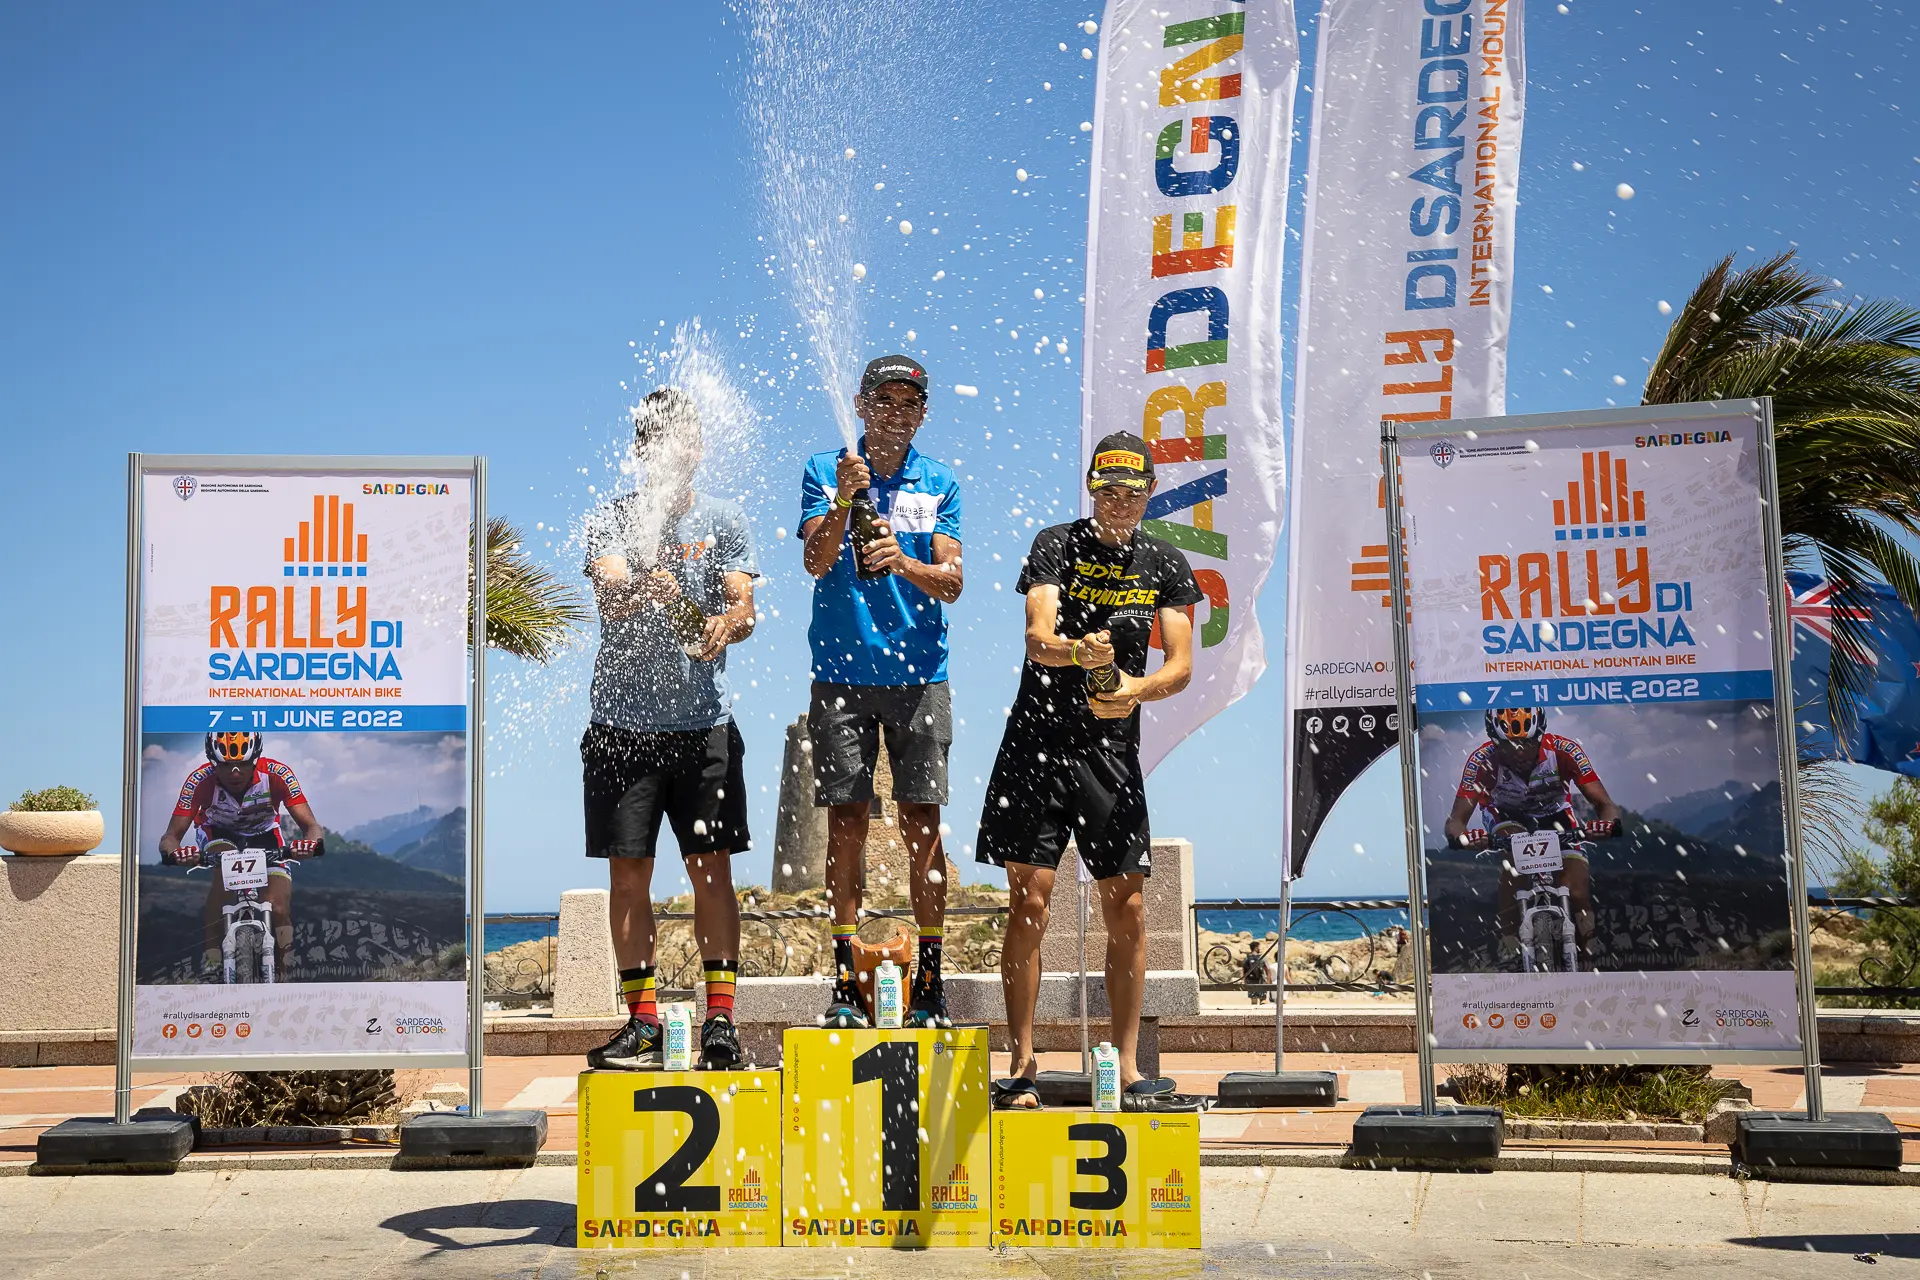 Il podio della gara maschile: da sinistra, Andreas Miltiadis, Diego Arias e Silvano Brugiafreddo (foto concessa)